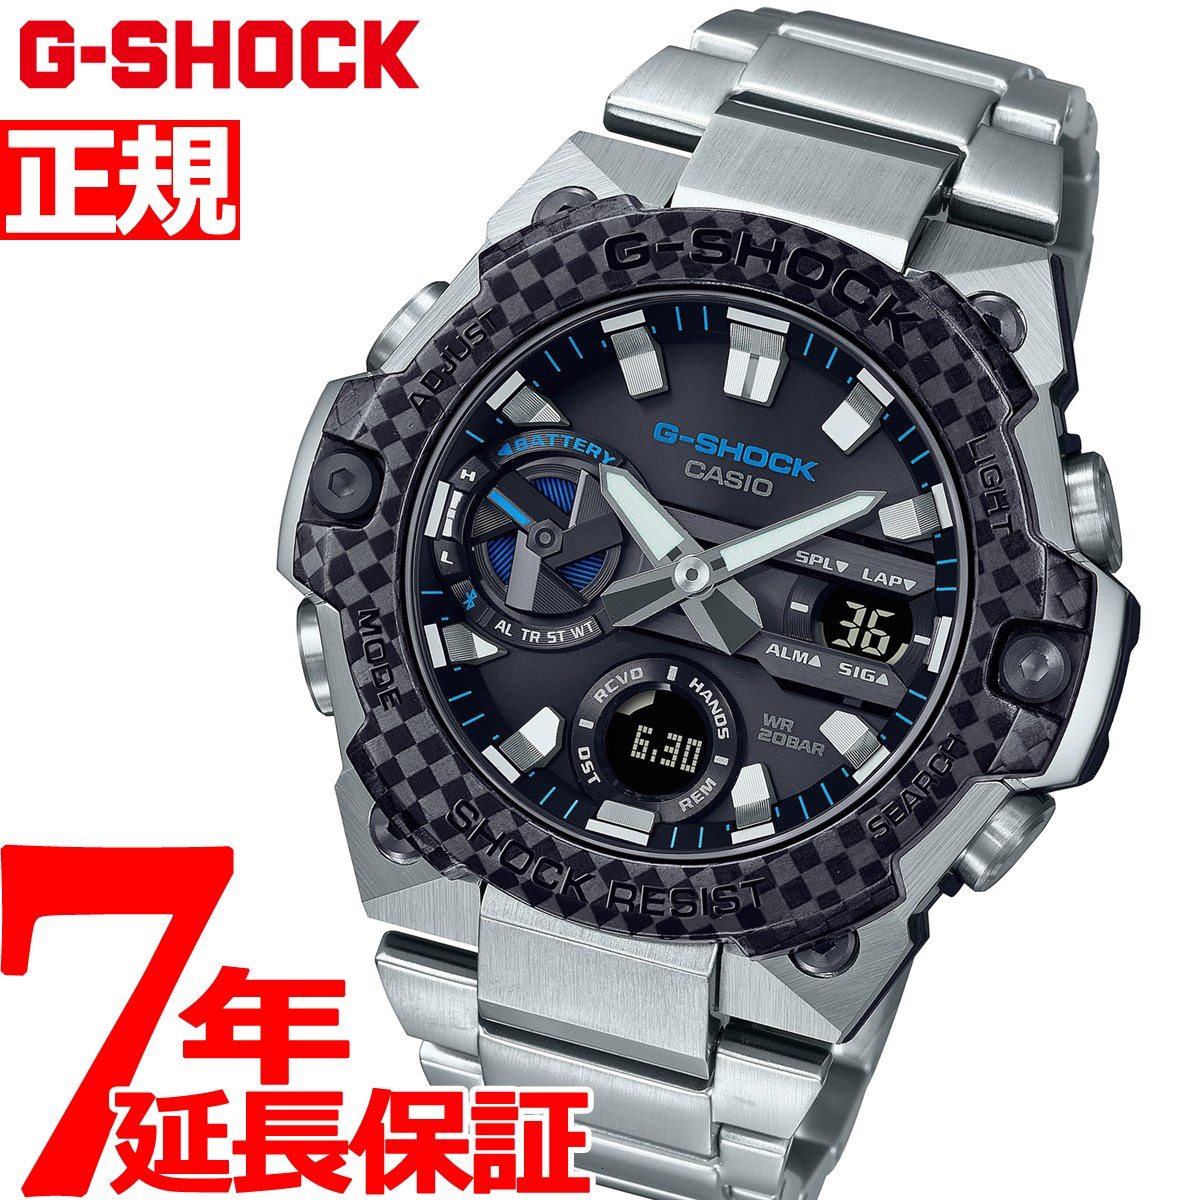 CASIO G-SHOCK GST-B400XD 1A2JF ソーラー腕時計